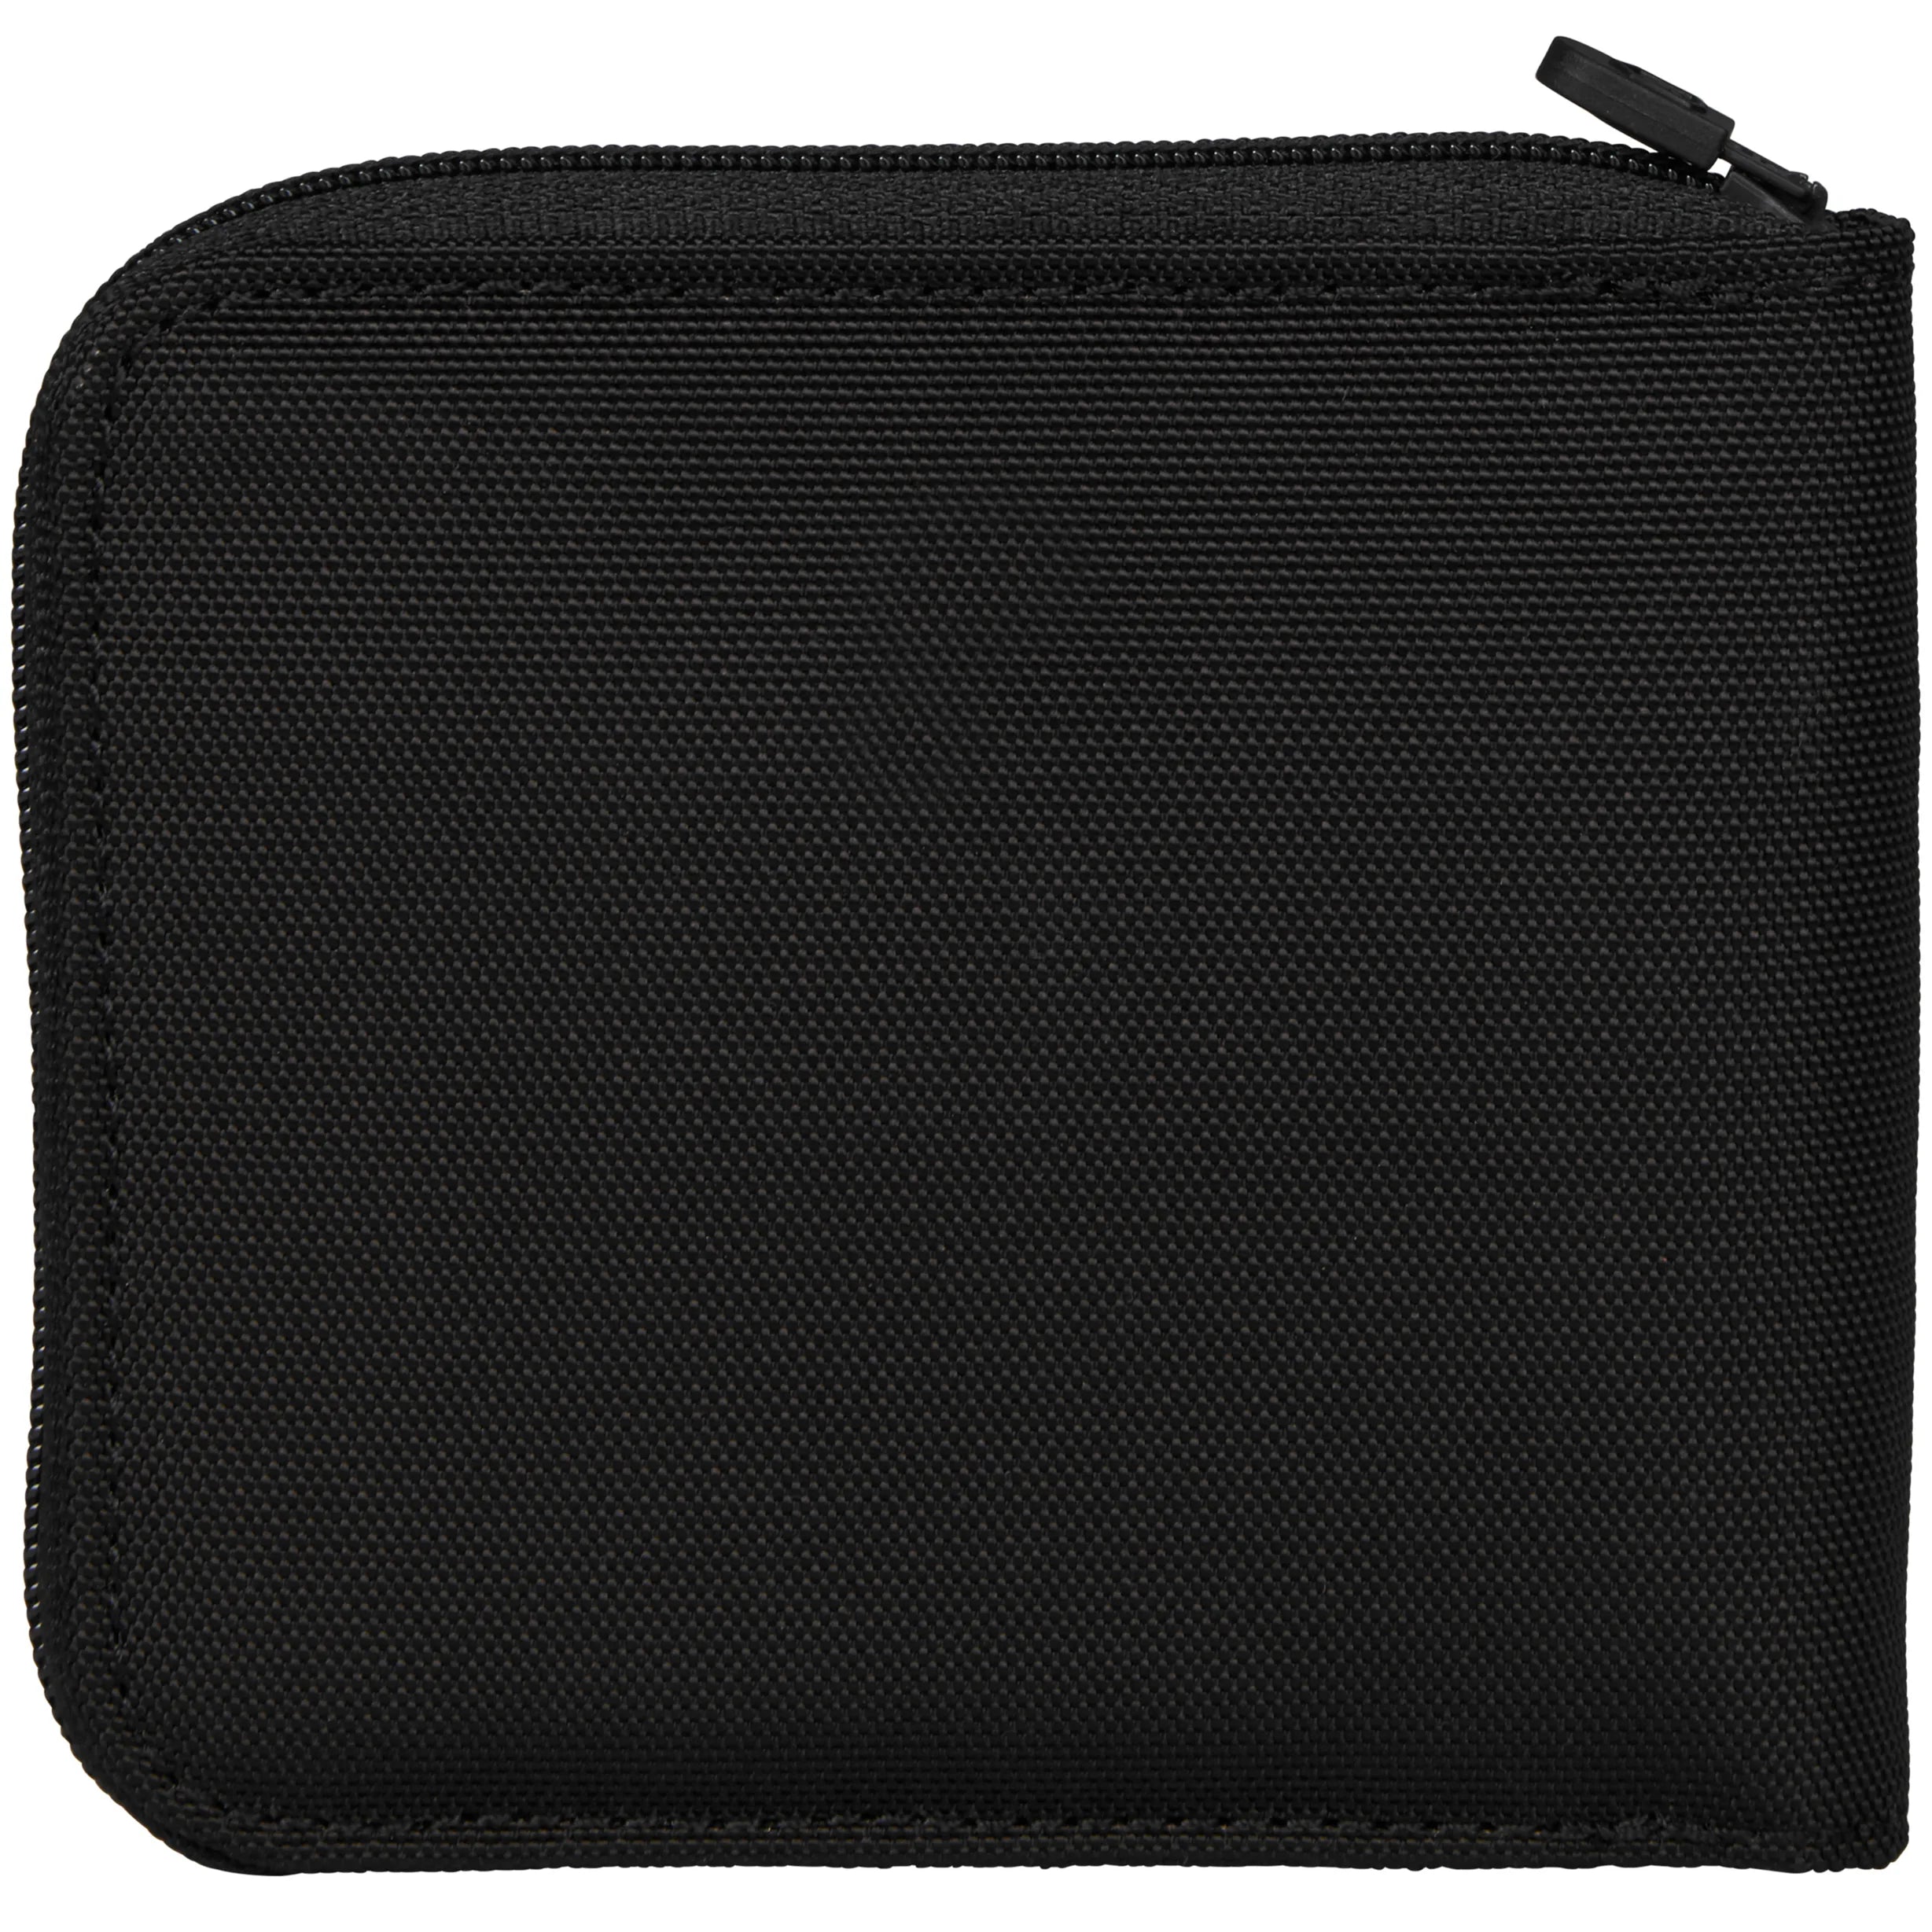 Victorinox Travel Accessories 5.0 Zip-Around Wallet RFID 11 cm - Black